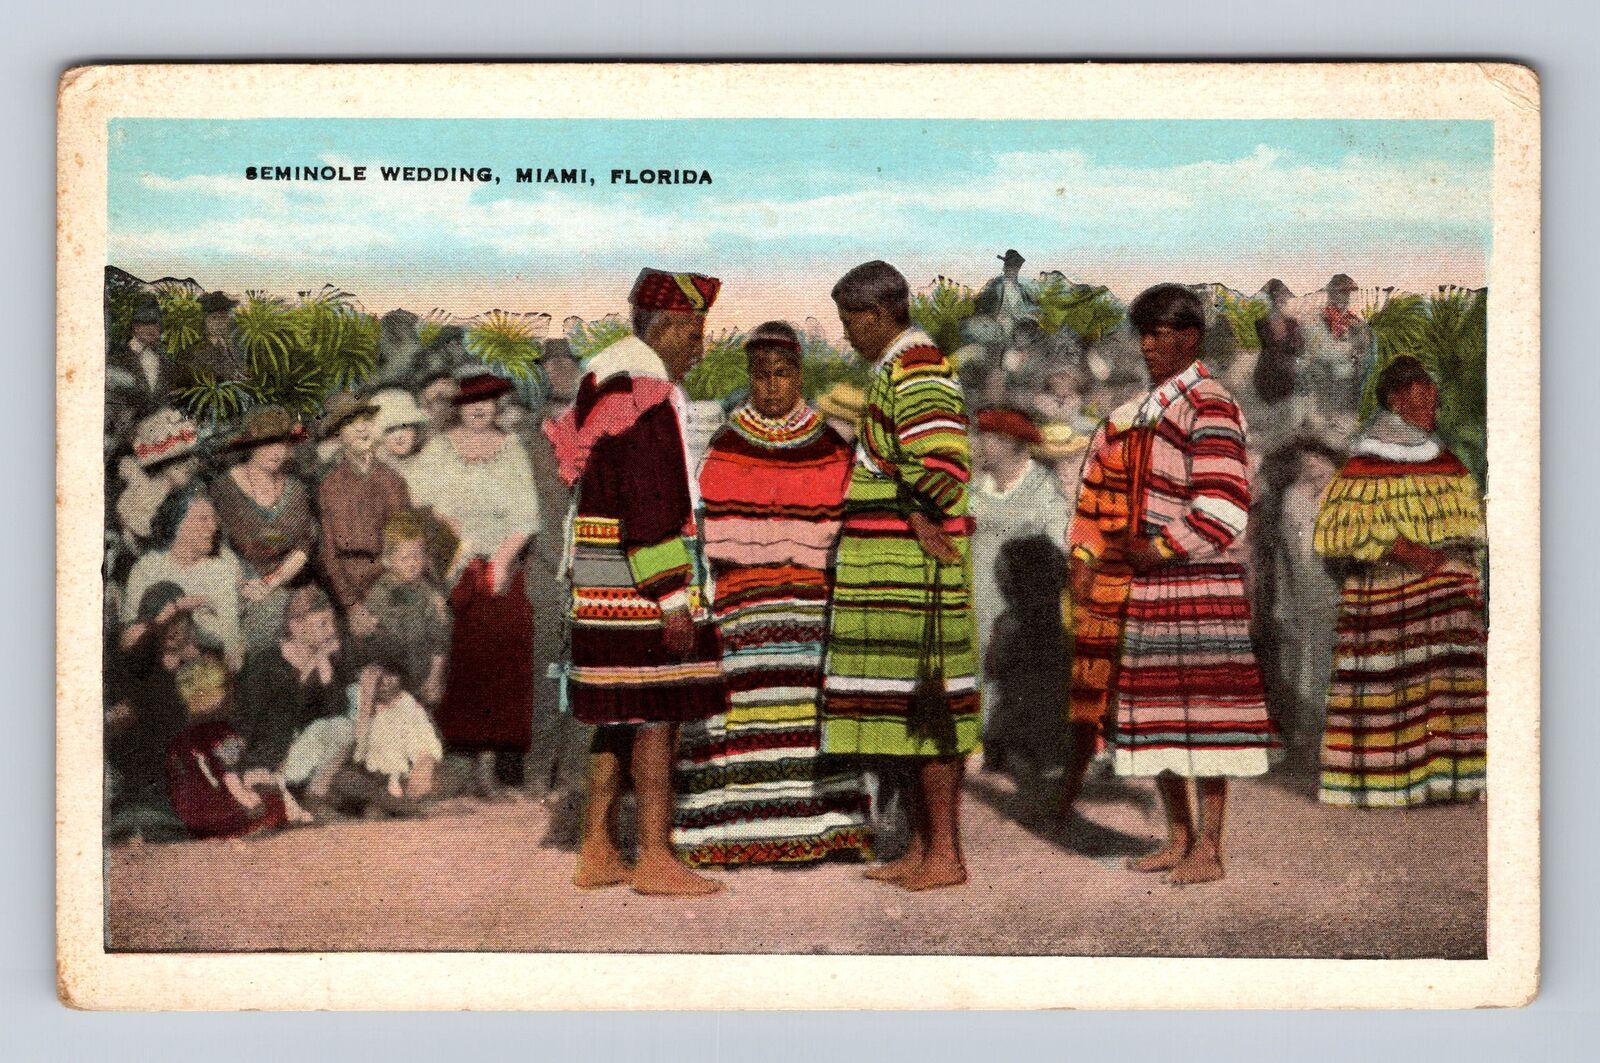 Miami FL-Florida, Seminole Wedding, Antique Vintage Souvenir Postcard